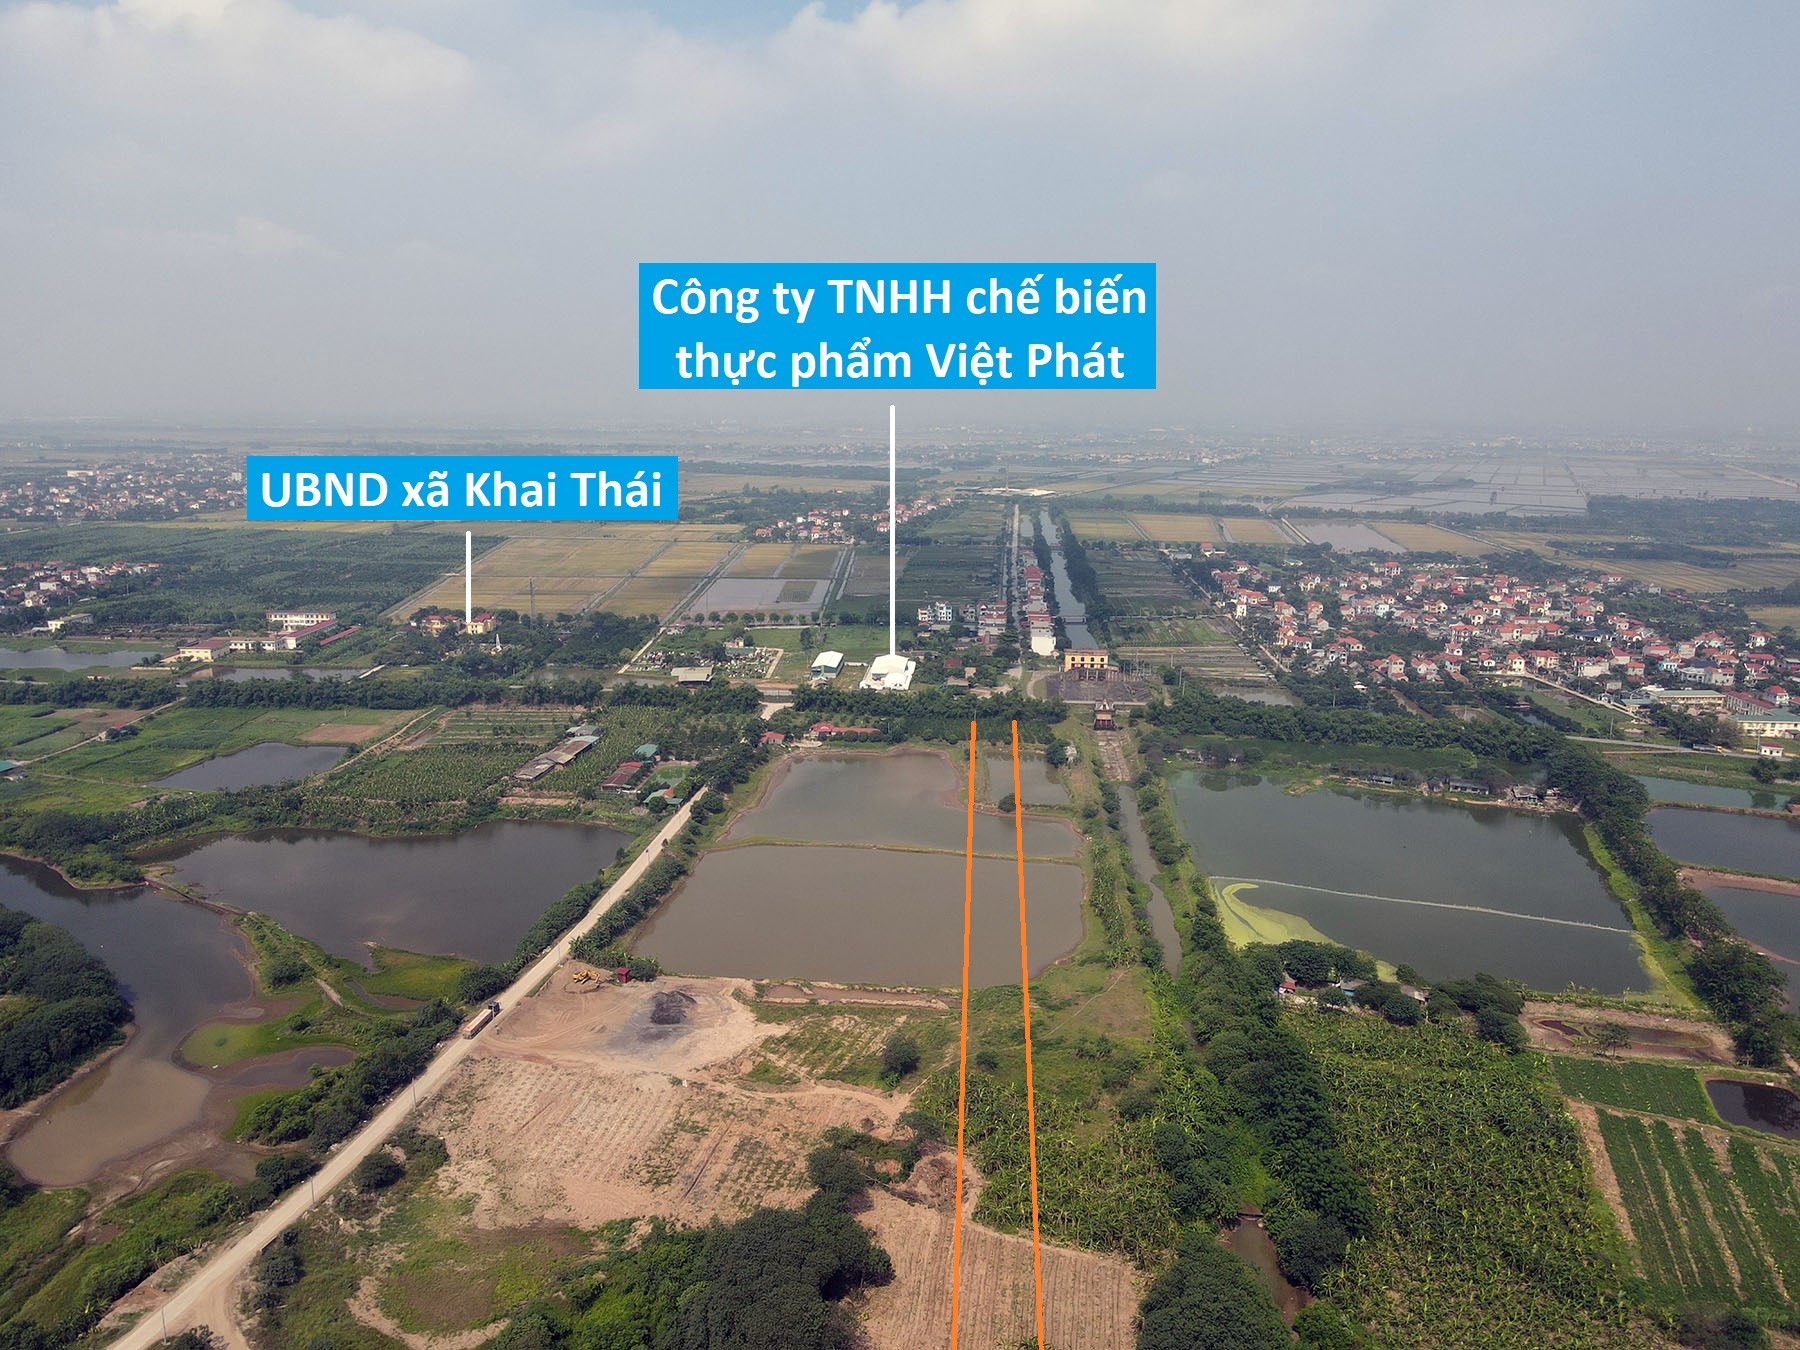 Toàn cảnh vị trí dự kiến xây cầu Mai Động vượt sông Hồng nối Hưng Yên - Hà Nội